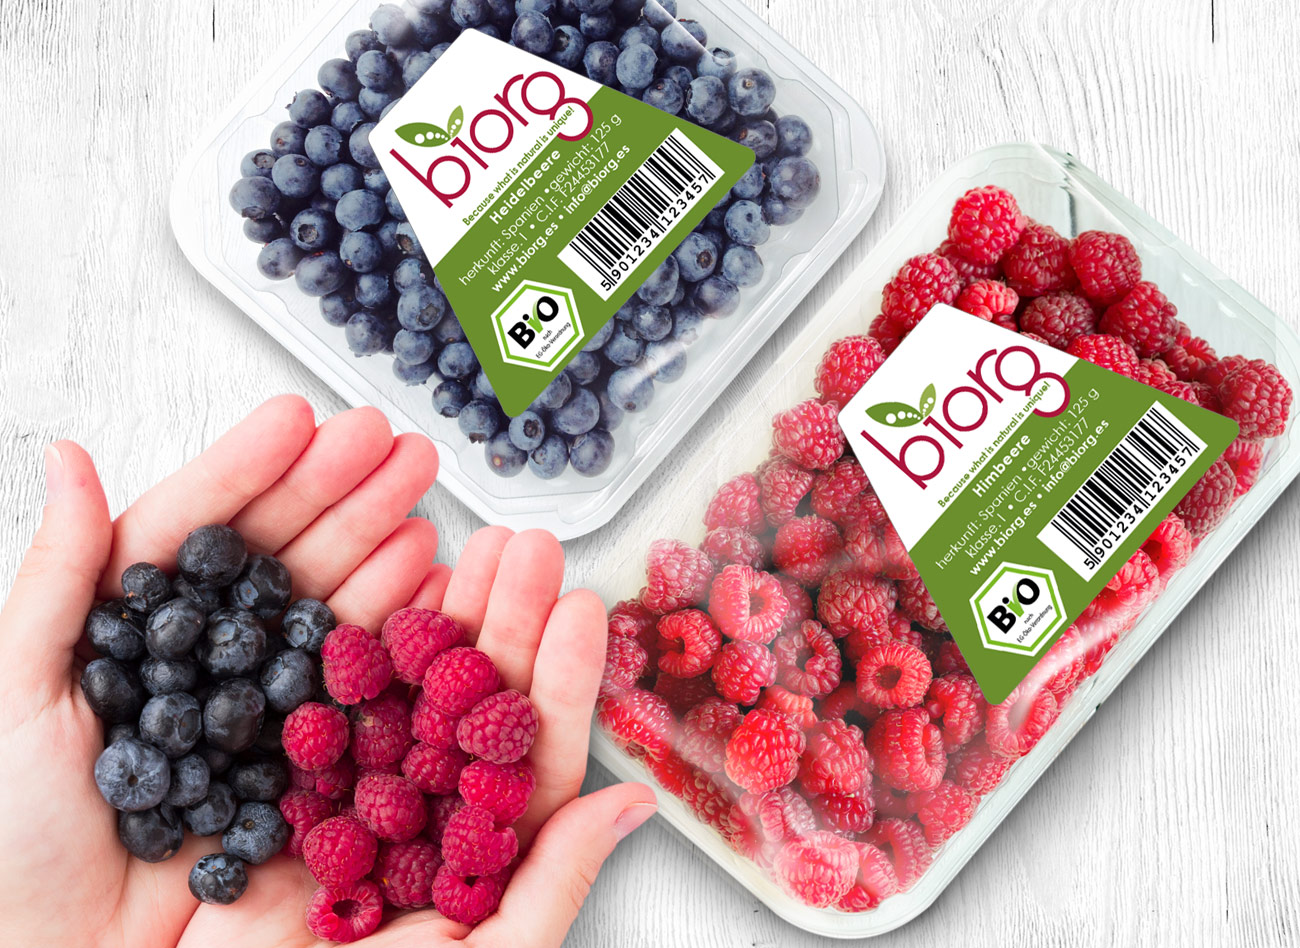 packaging de productos bio de la marca biorg